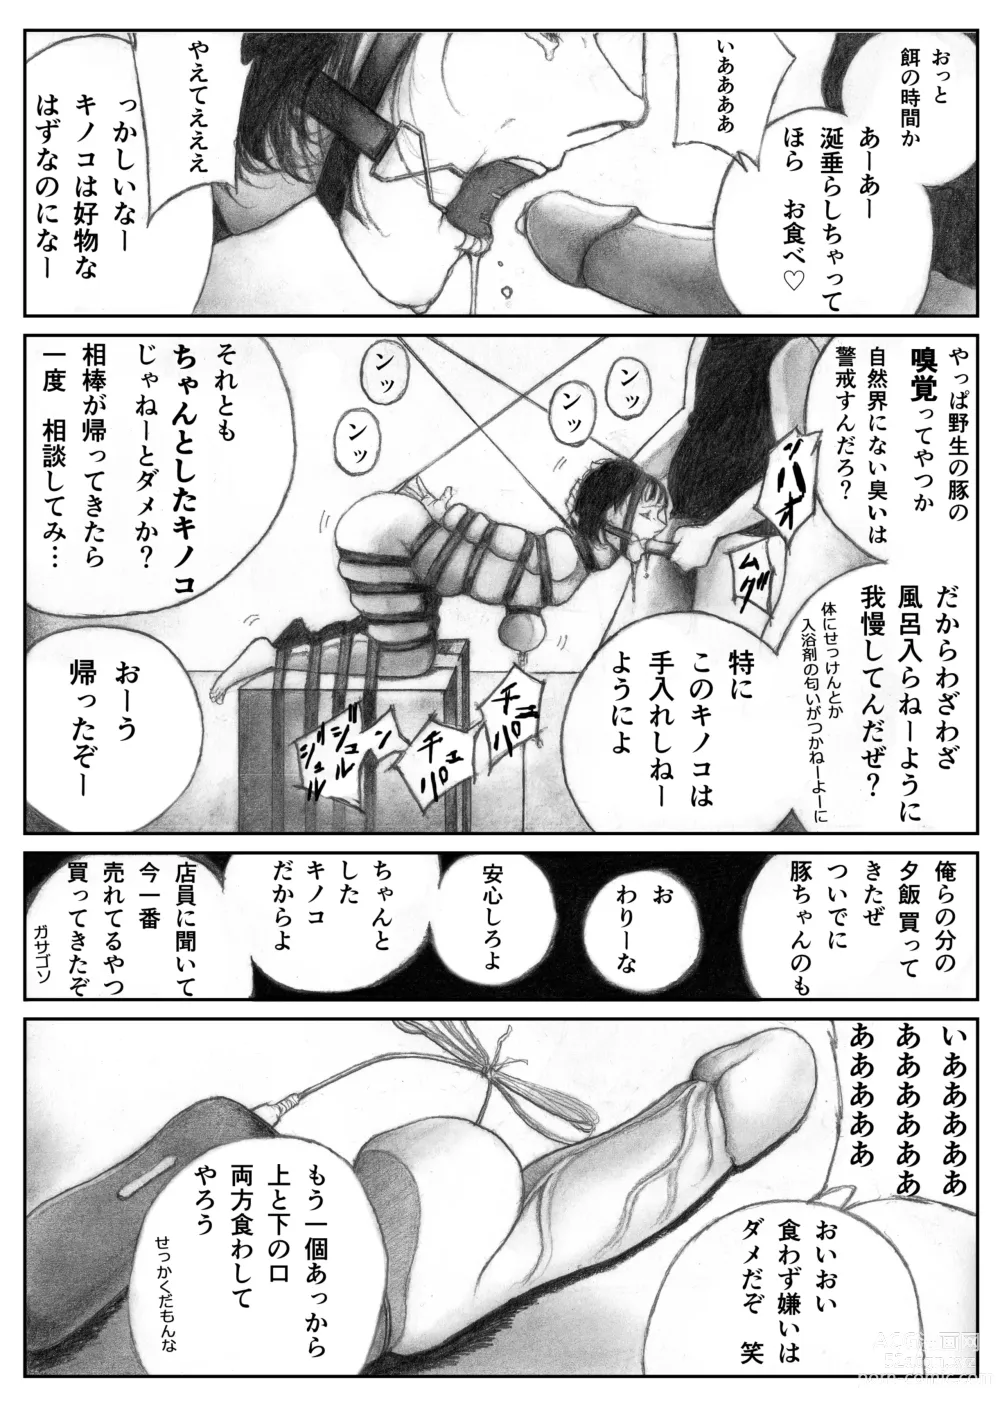 Page 6 of doujinshi Katte ni Buta Aigo ♡